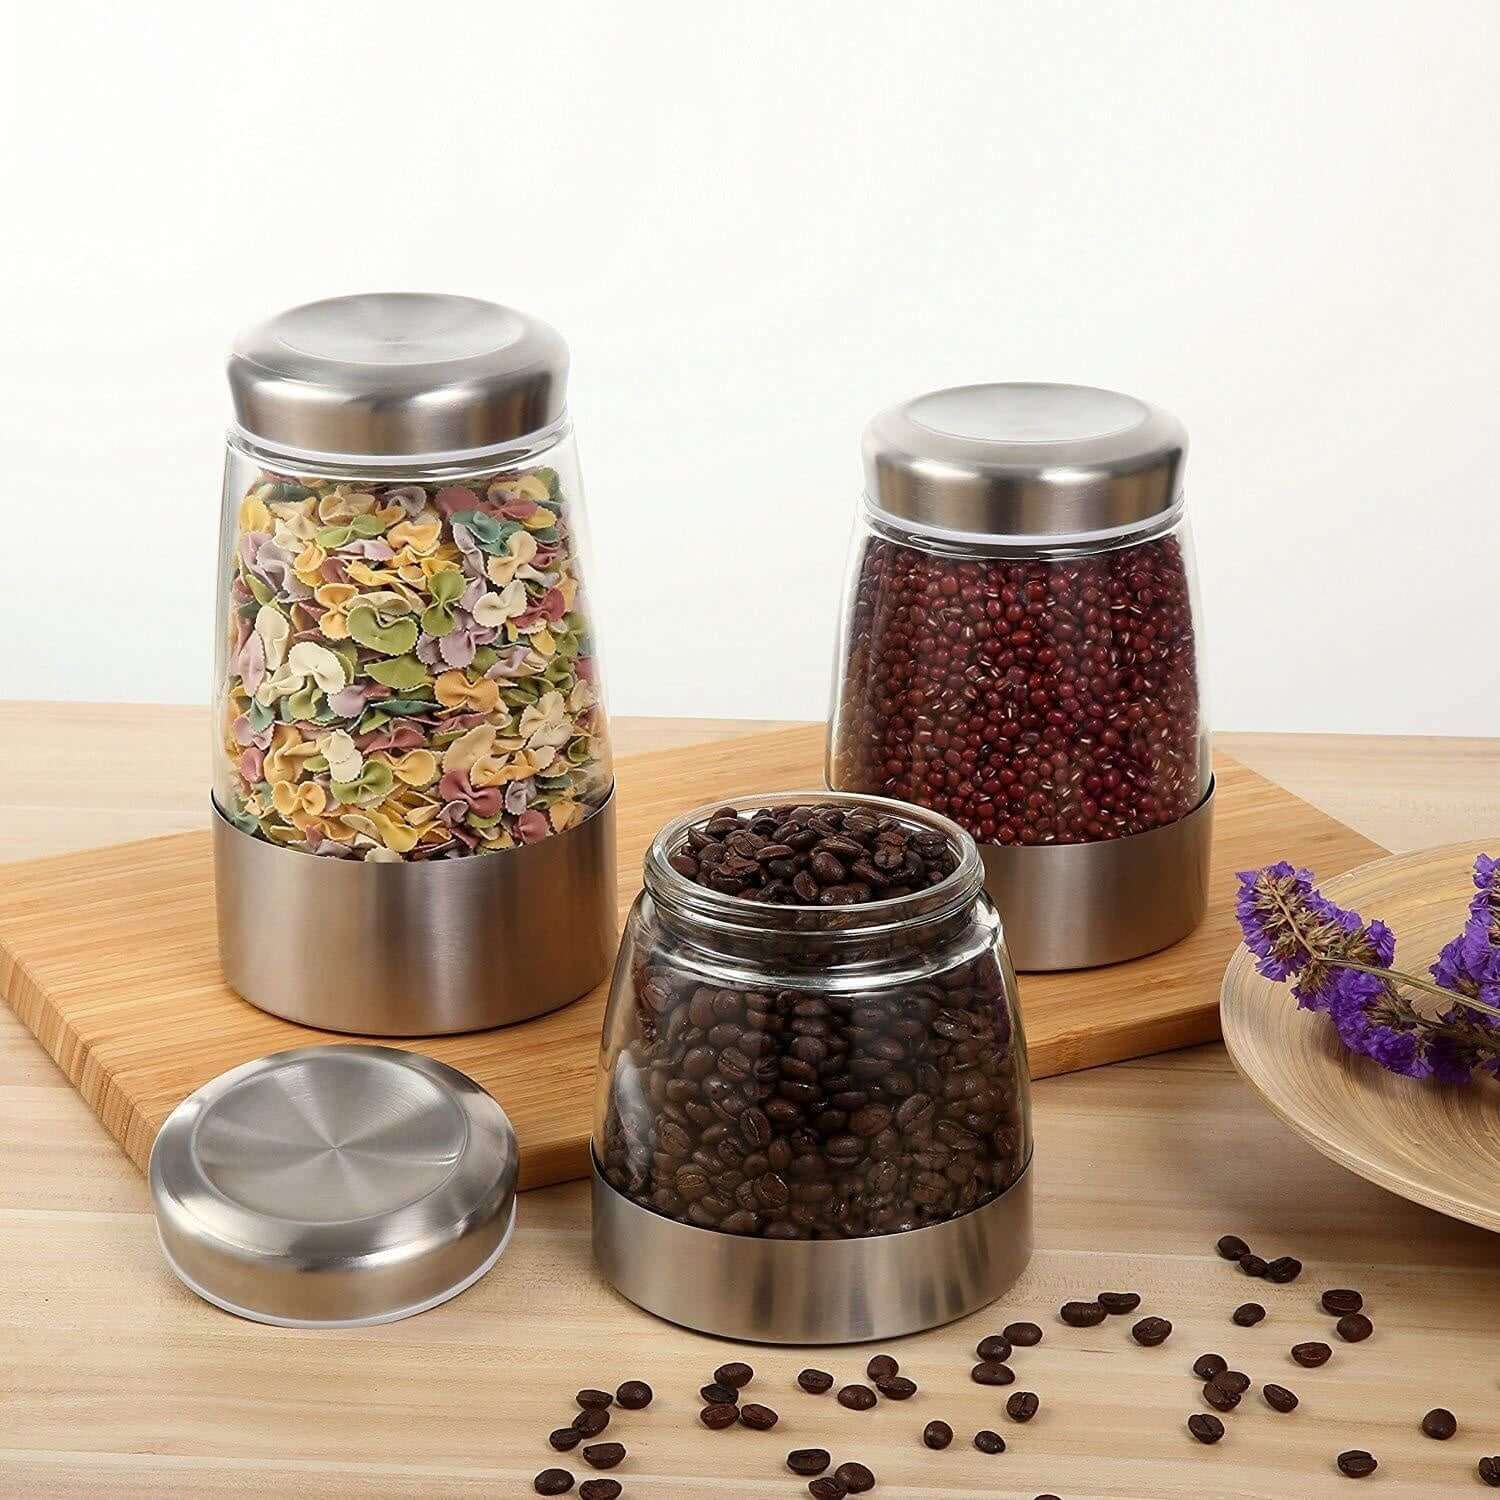 Glass Food Storage Container, Glass Kitchen Storage Jars